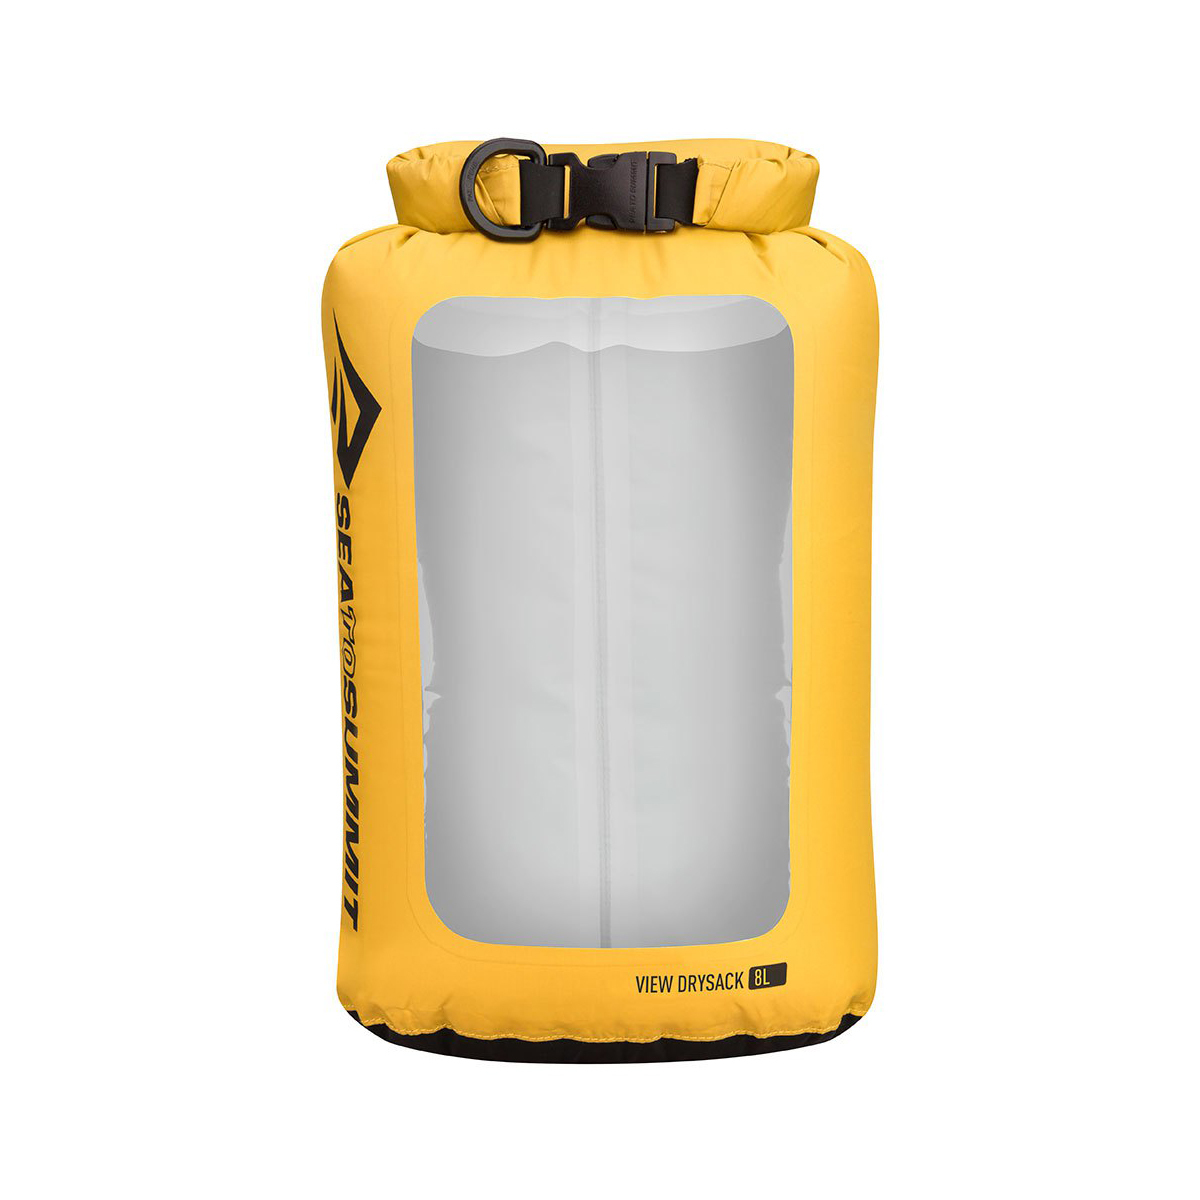 RENSARE - 防水袋, 16x12x24 公分/2.5 公升 | IKEA 線上購物